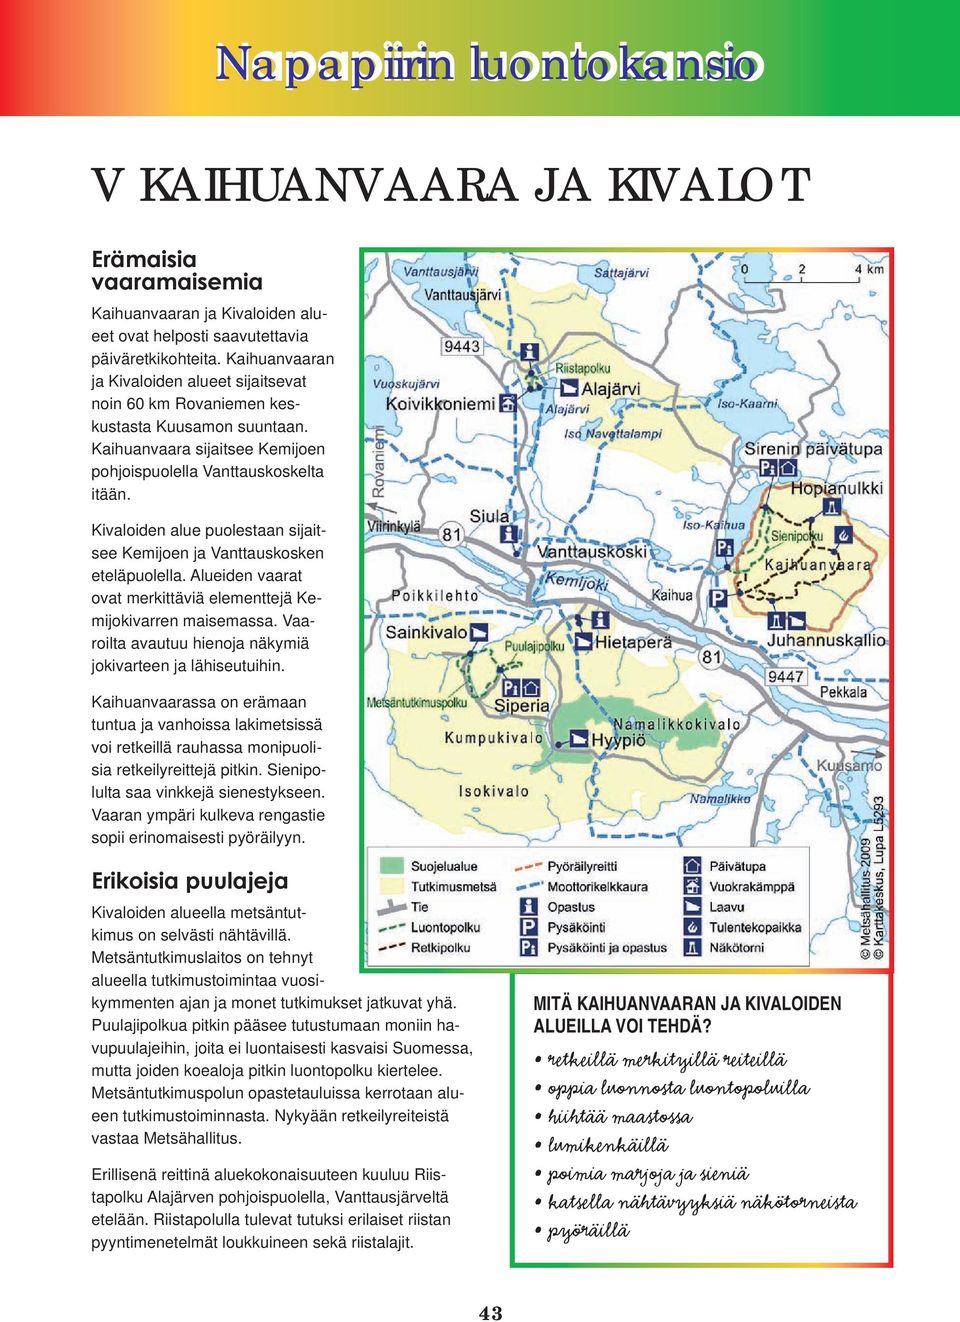 Kivaloiden alue puolestaan sijaitsee Kemijoen ja Vanttauskosken eteläpuolella. Alueiden vaarat ovat merkittäviä elementtejä Kemijokivarren maisemassa.